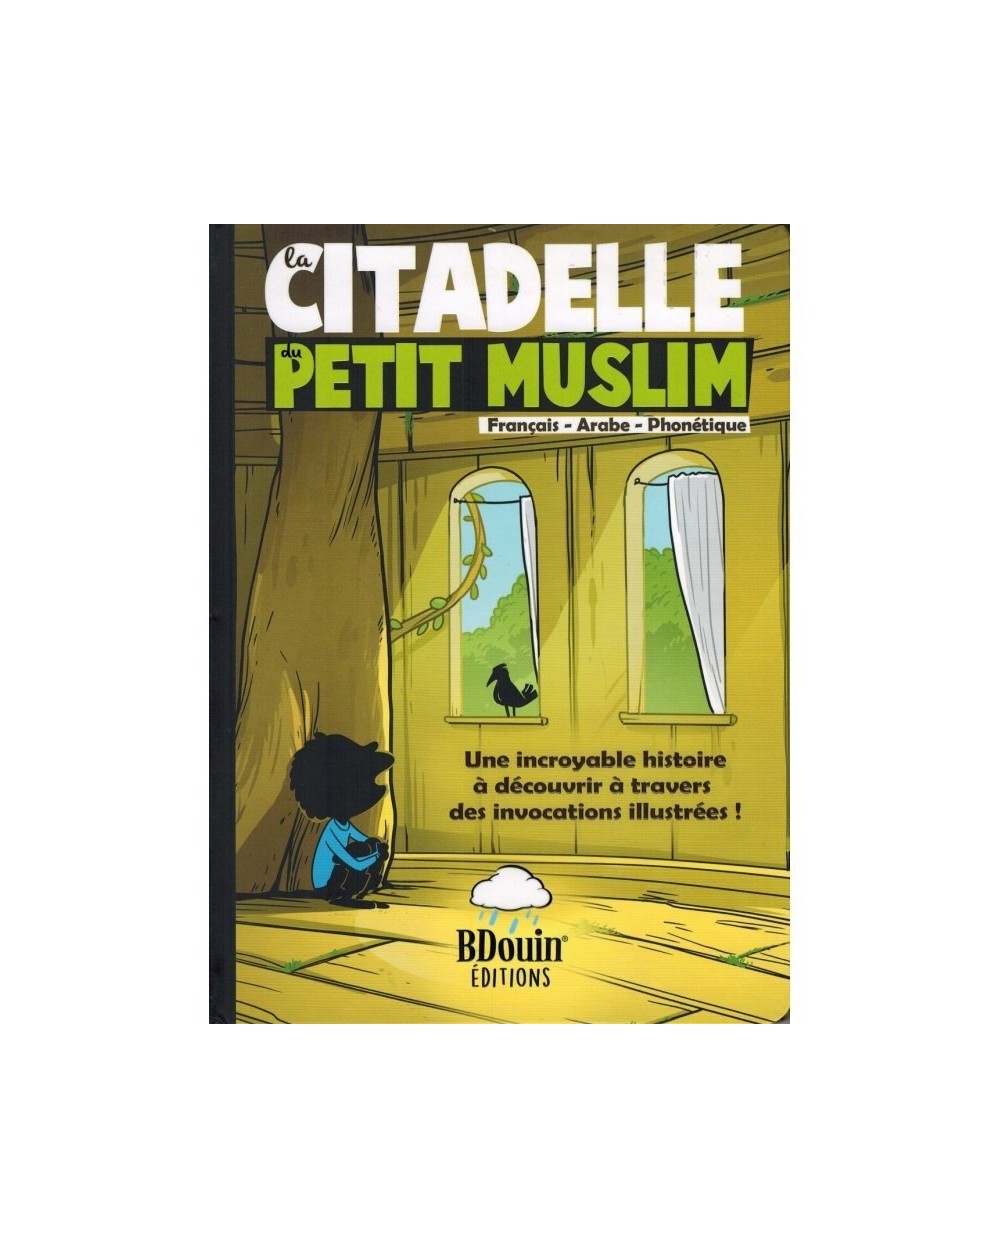 LA CITADELLE DU PETIT MUSLIM - FRENCH - ARABIC - PHONETICS - BDOUIN EDITIONS